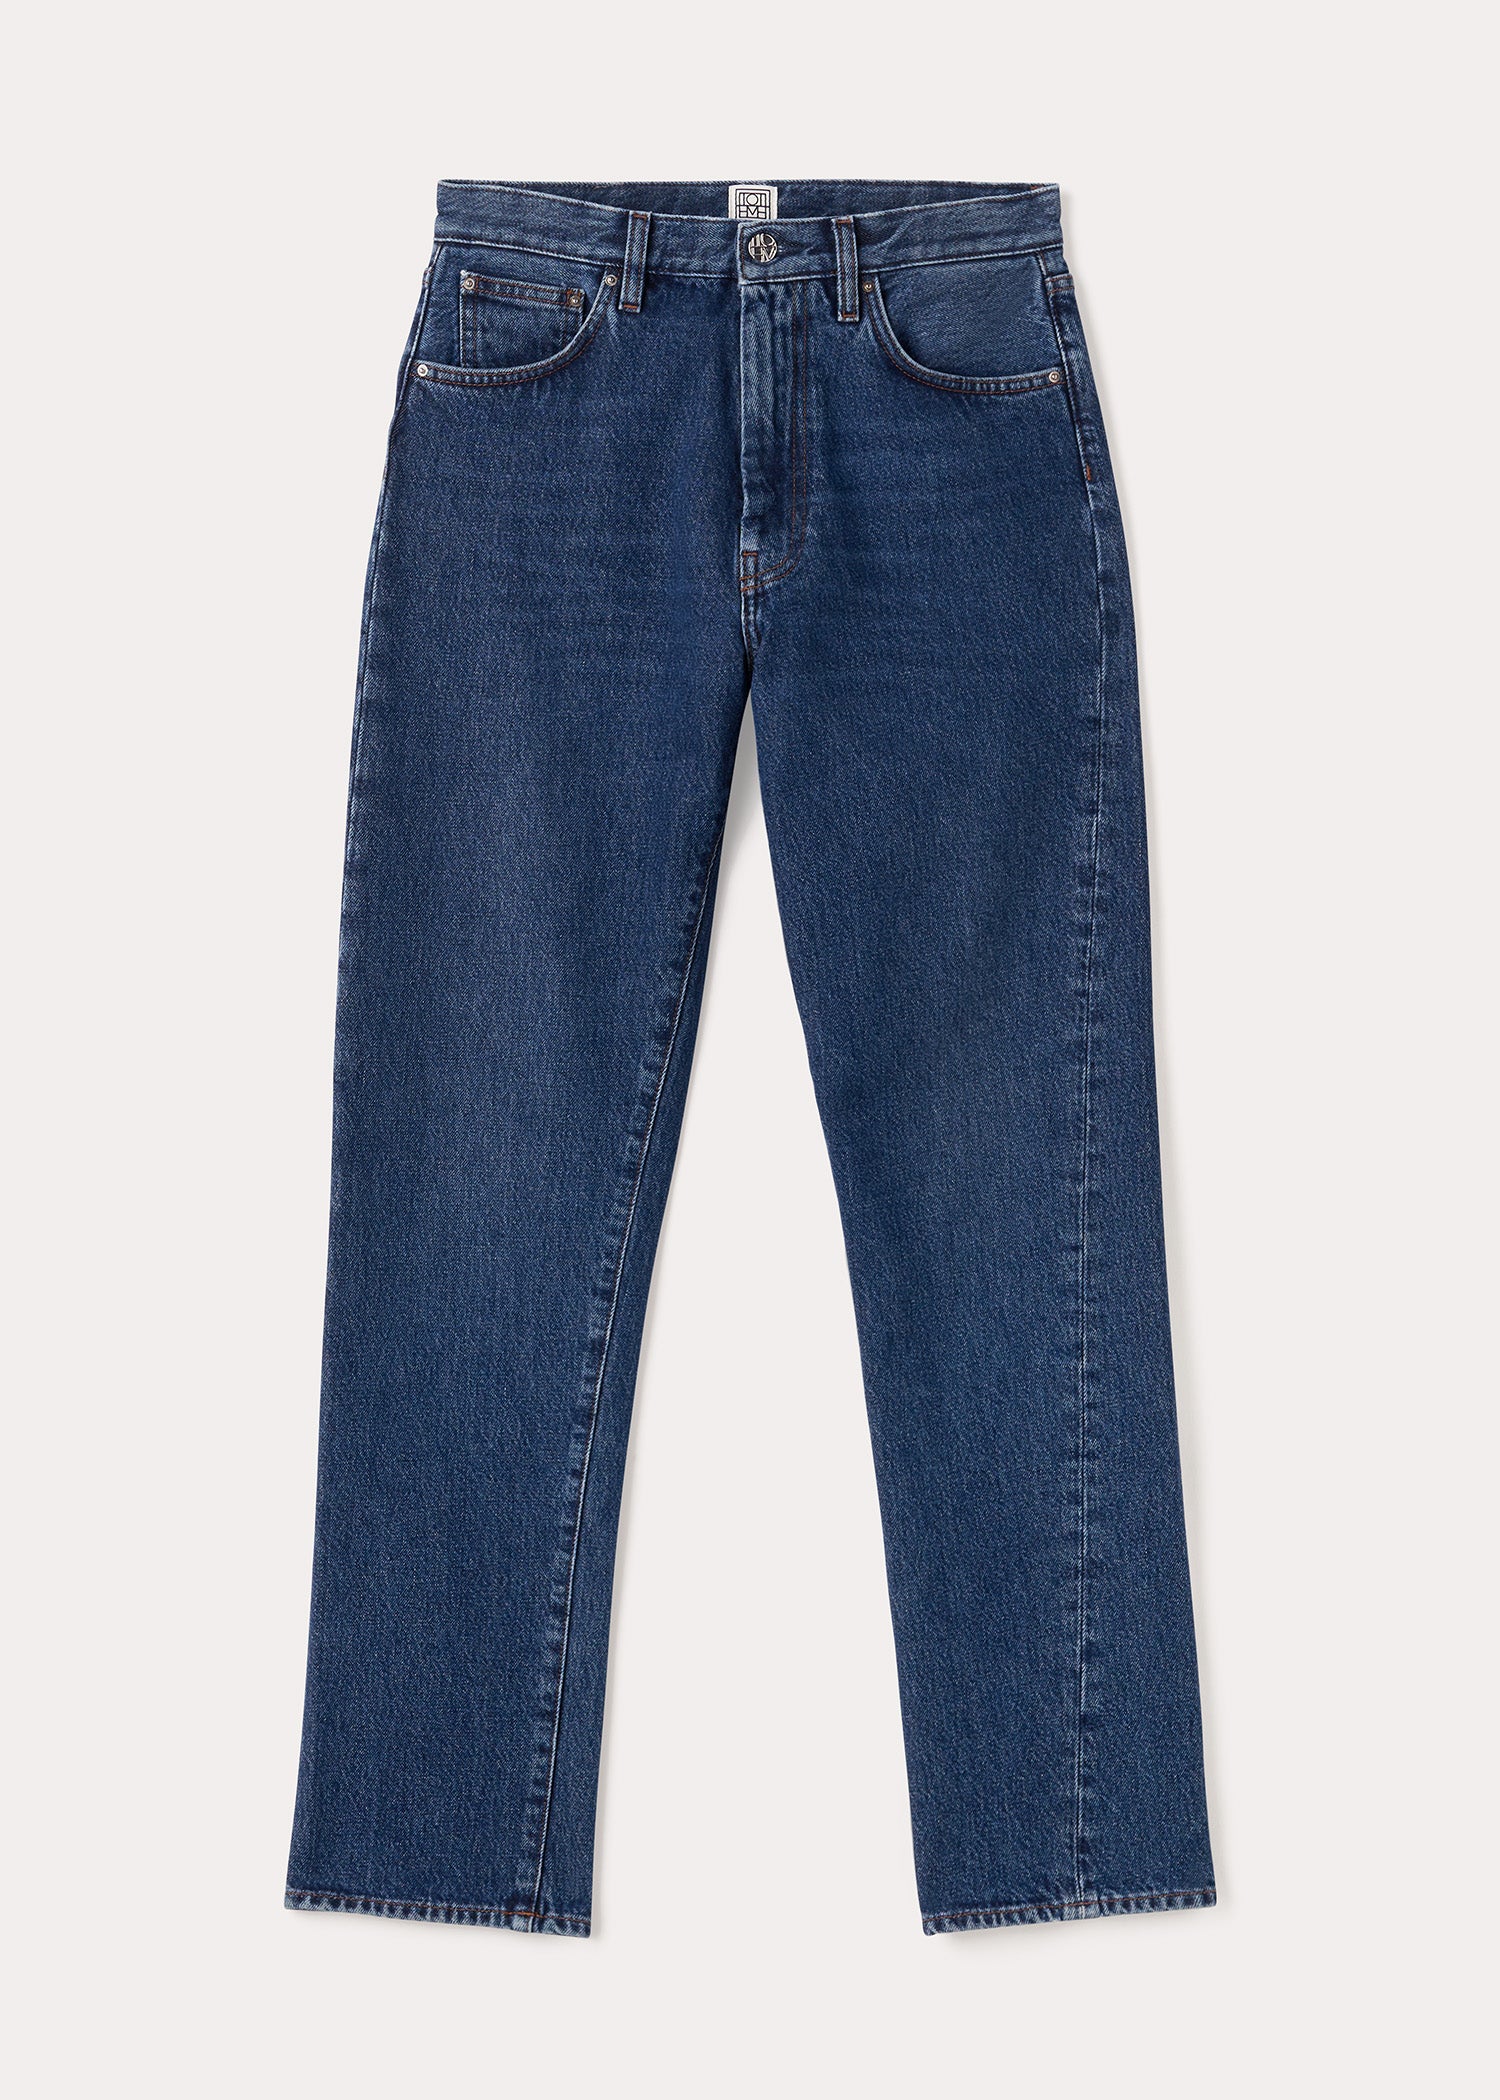 Buy Dark Blue 360° Stretch Skinny Jeans from Next Ireland